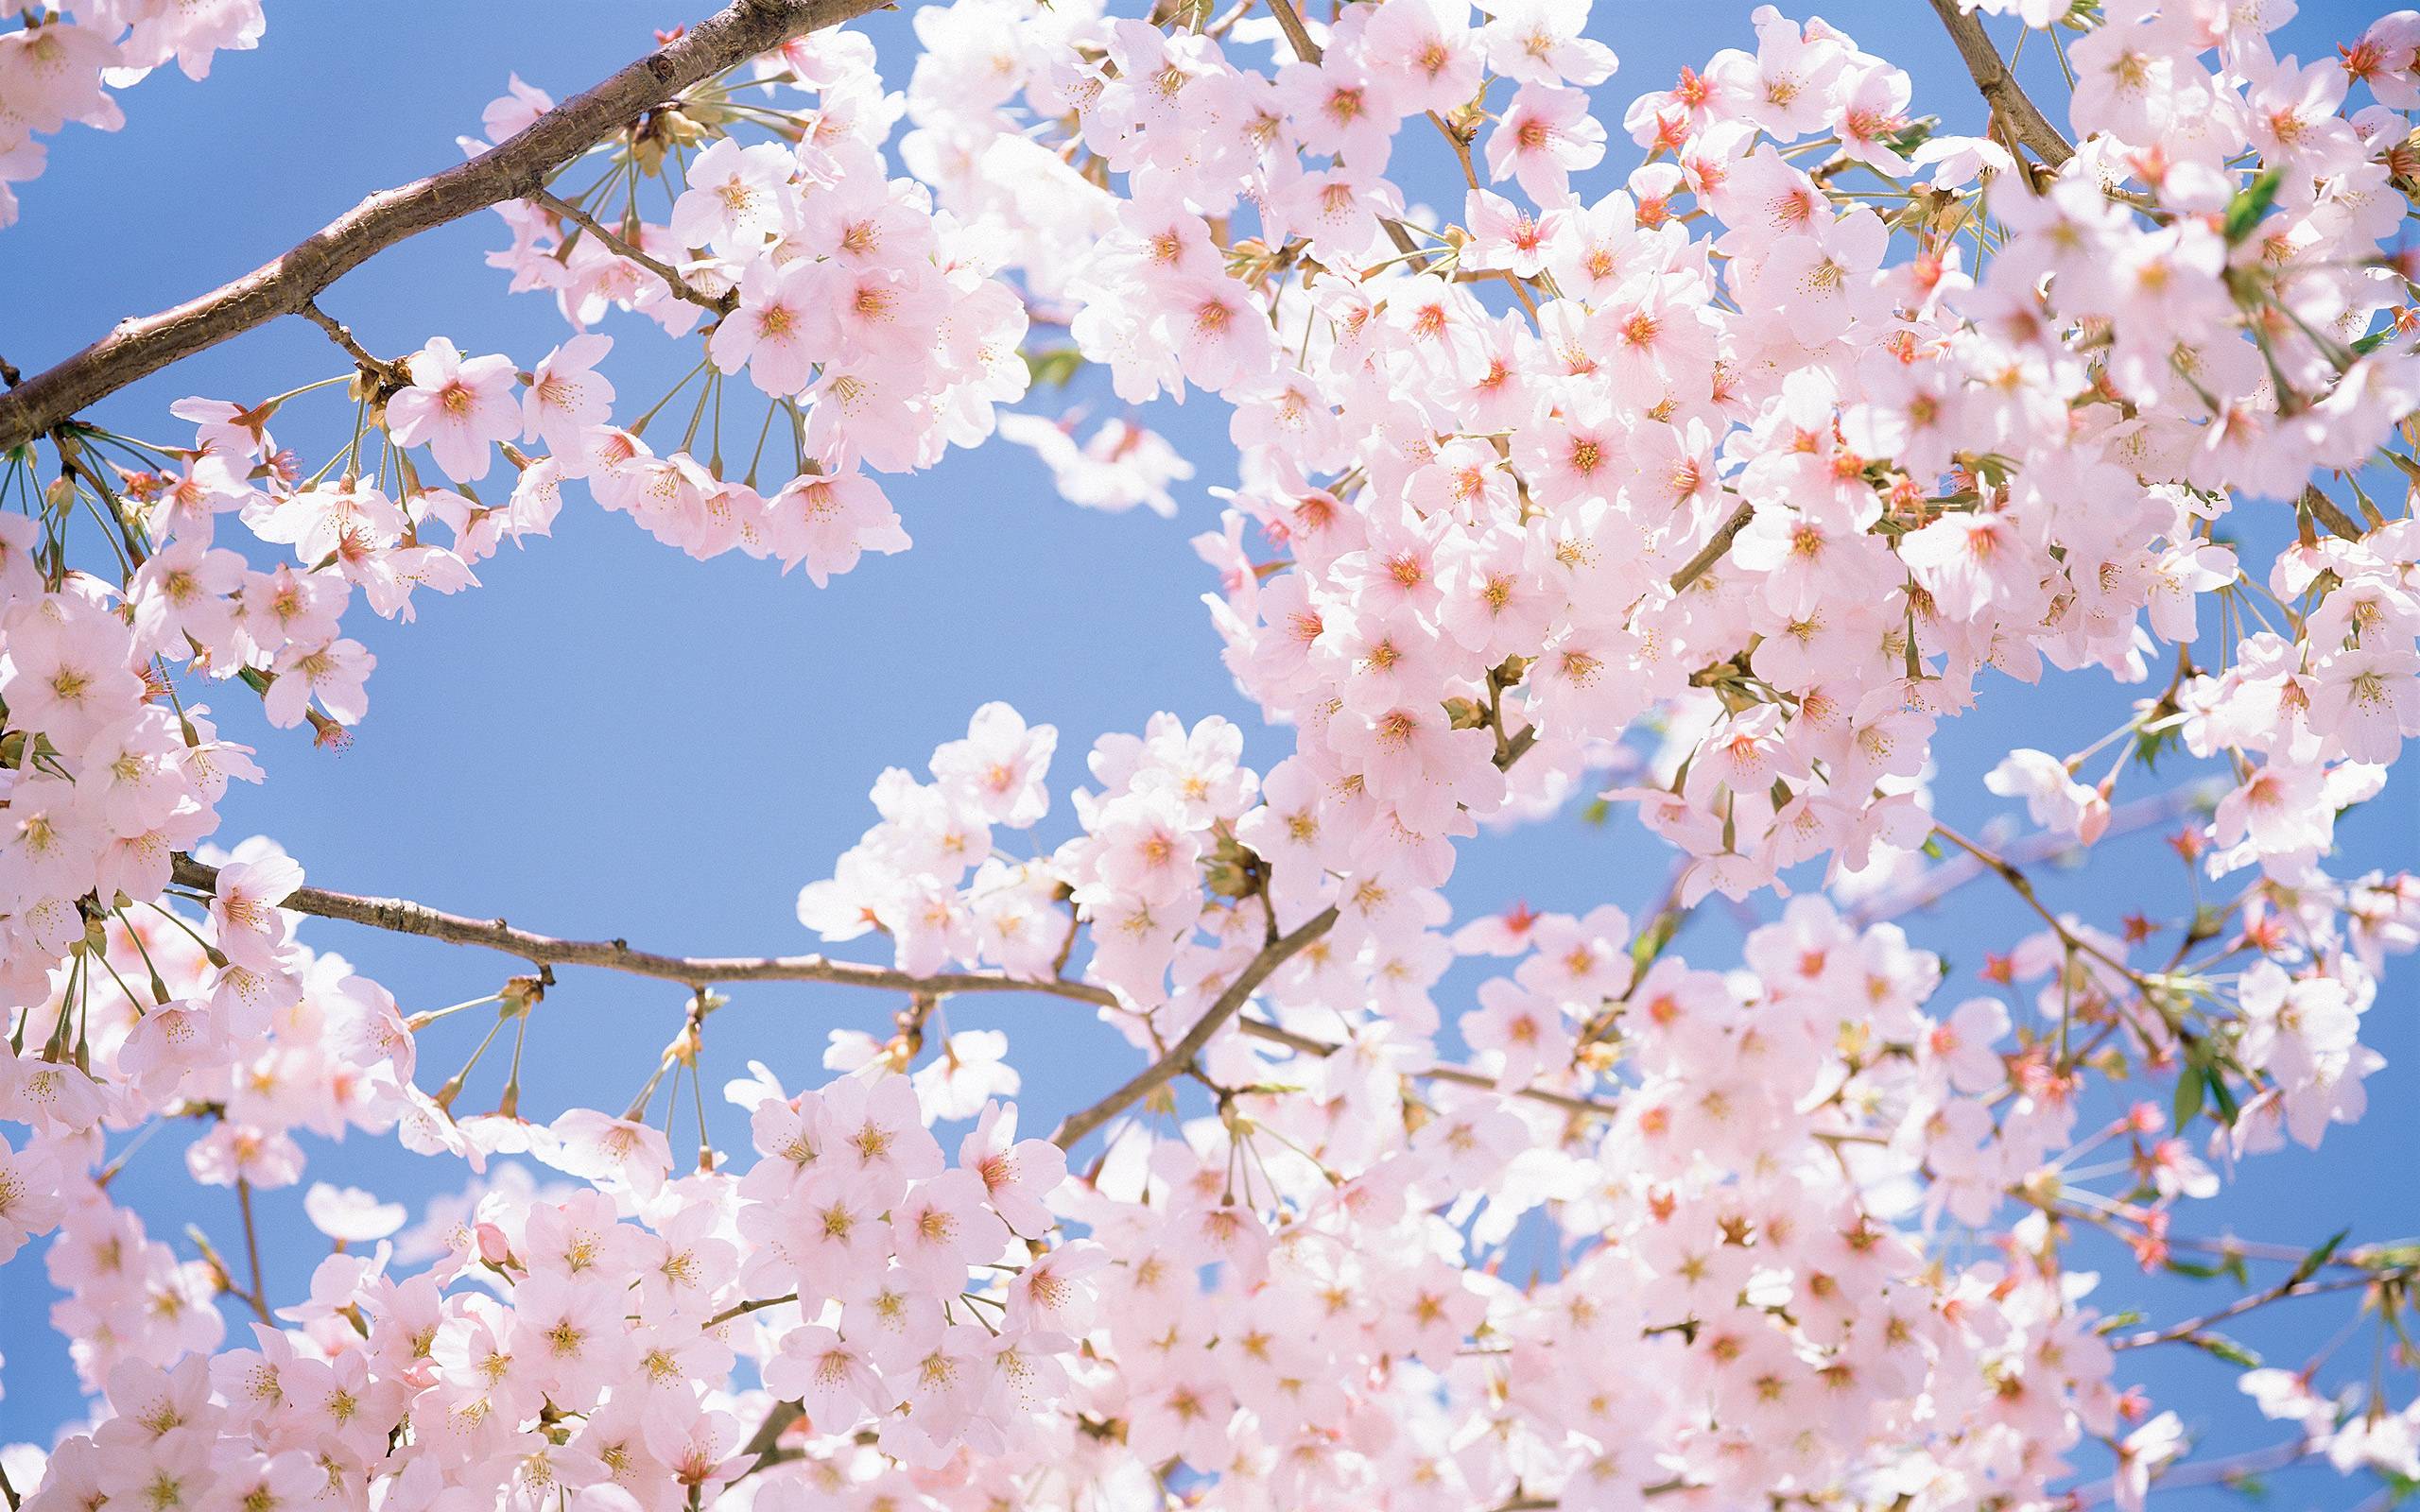 Wallpaper For > Tumblr Background Cherry Blossom